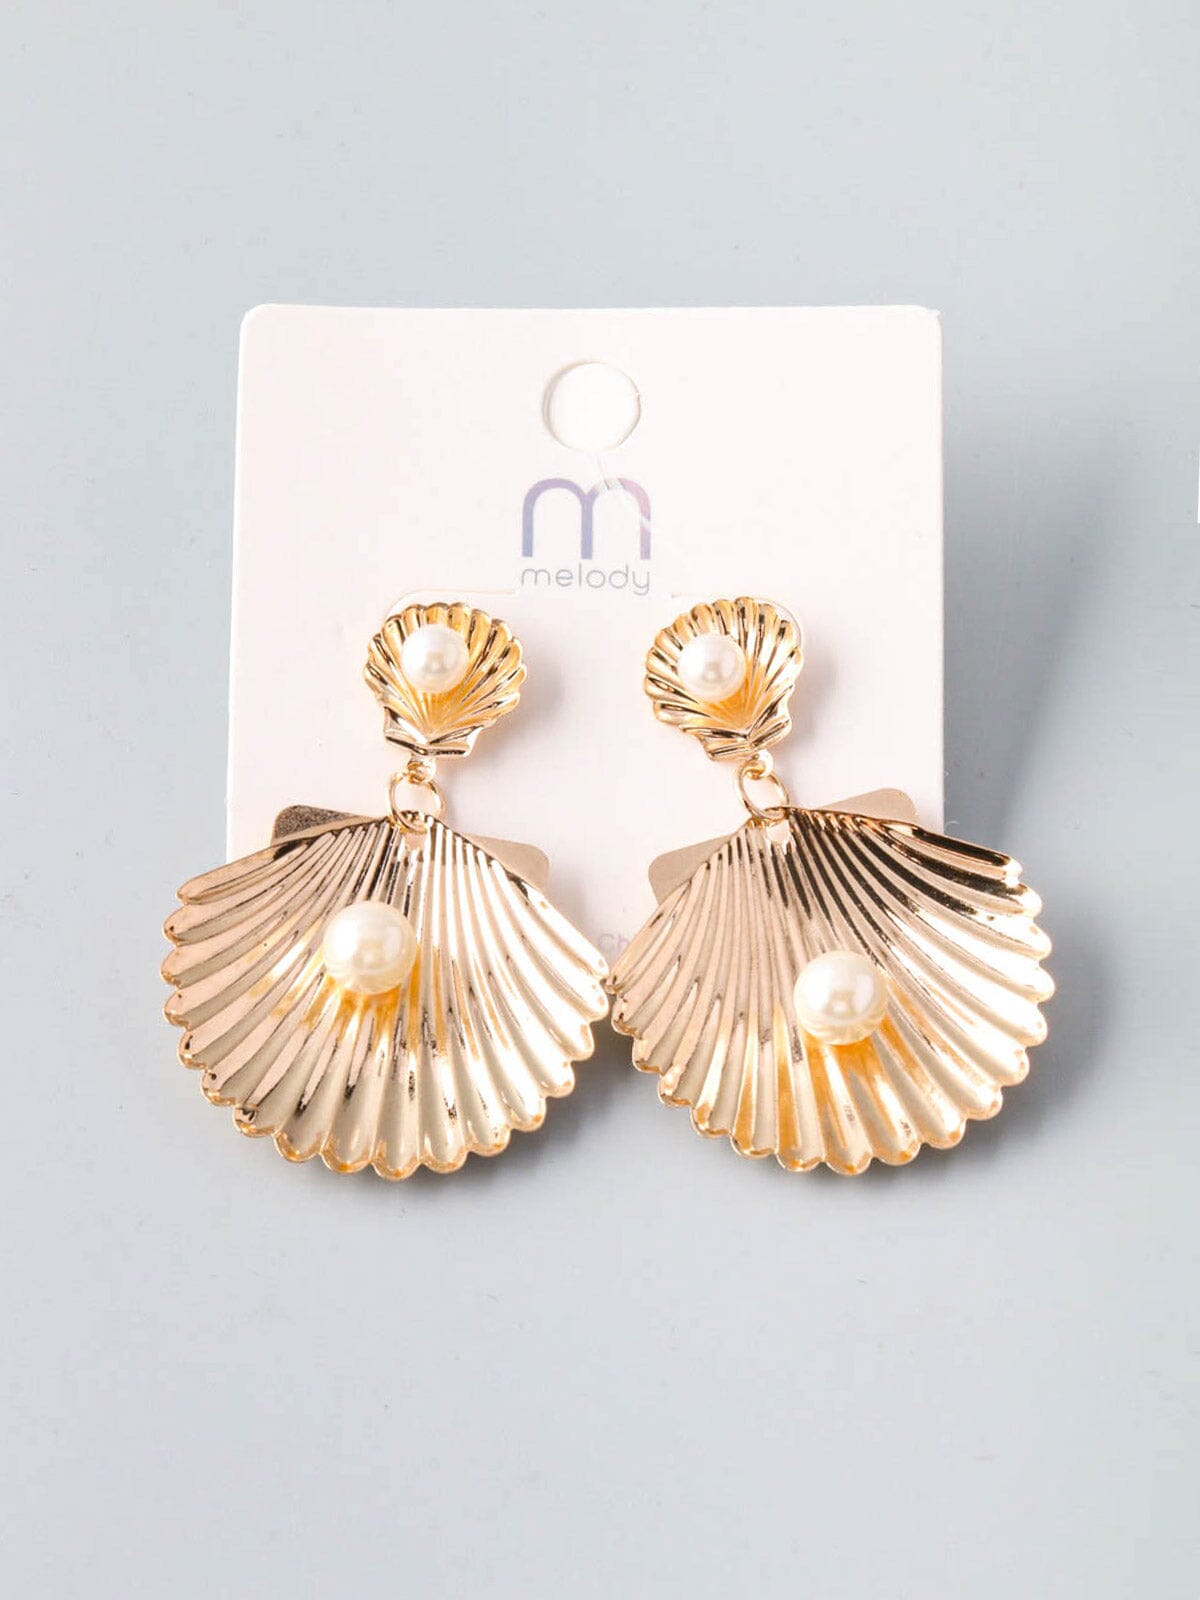 Shell Pearl Gold Earrings